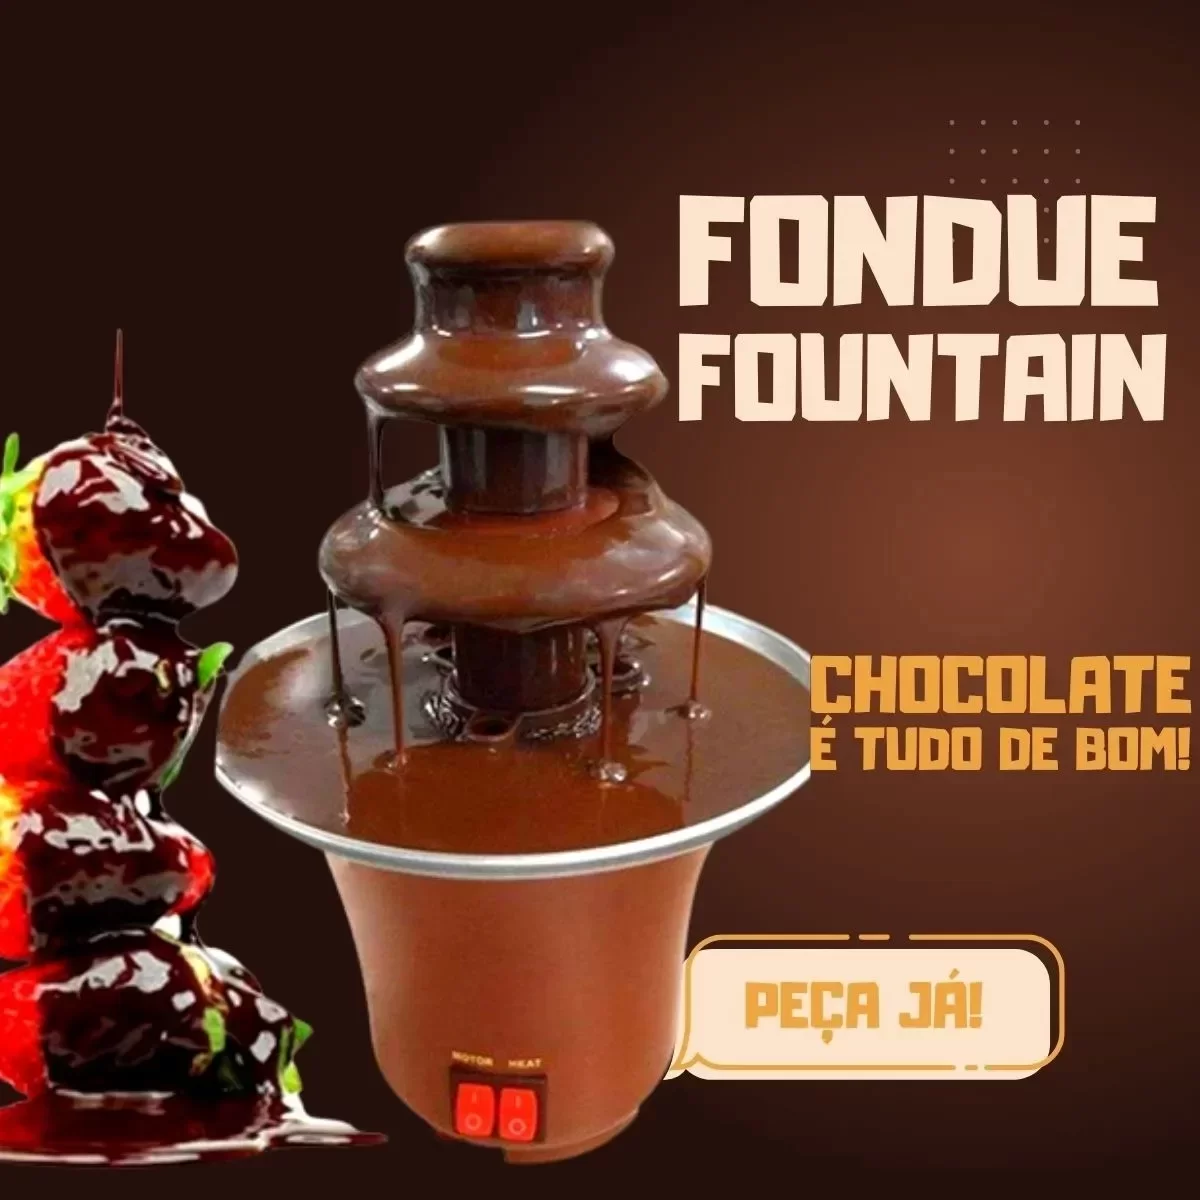 2022 fonte de chocolate fondue evento casamento crianças aniversário festa festiva suprimentos natal - 9